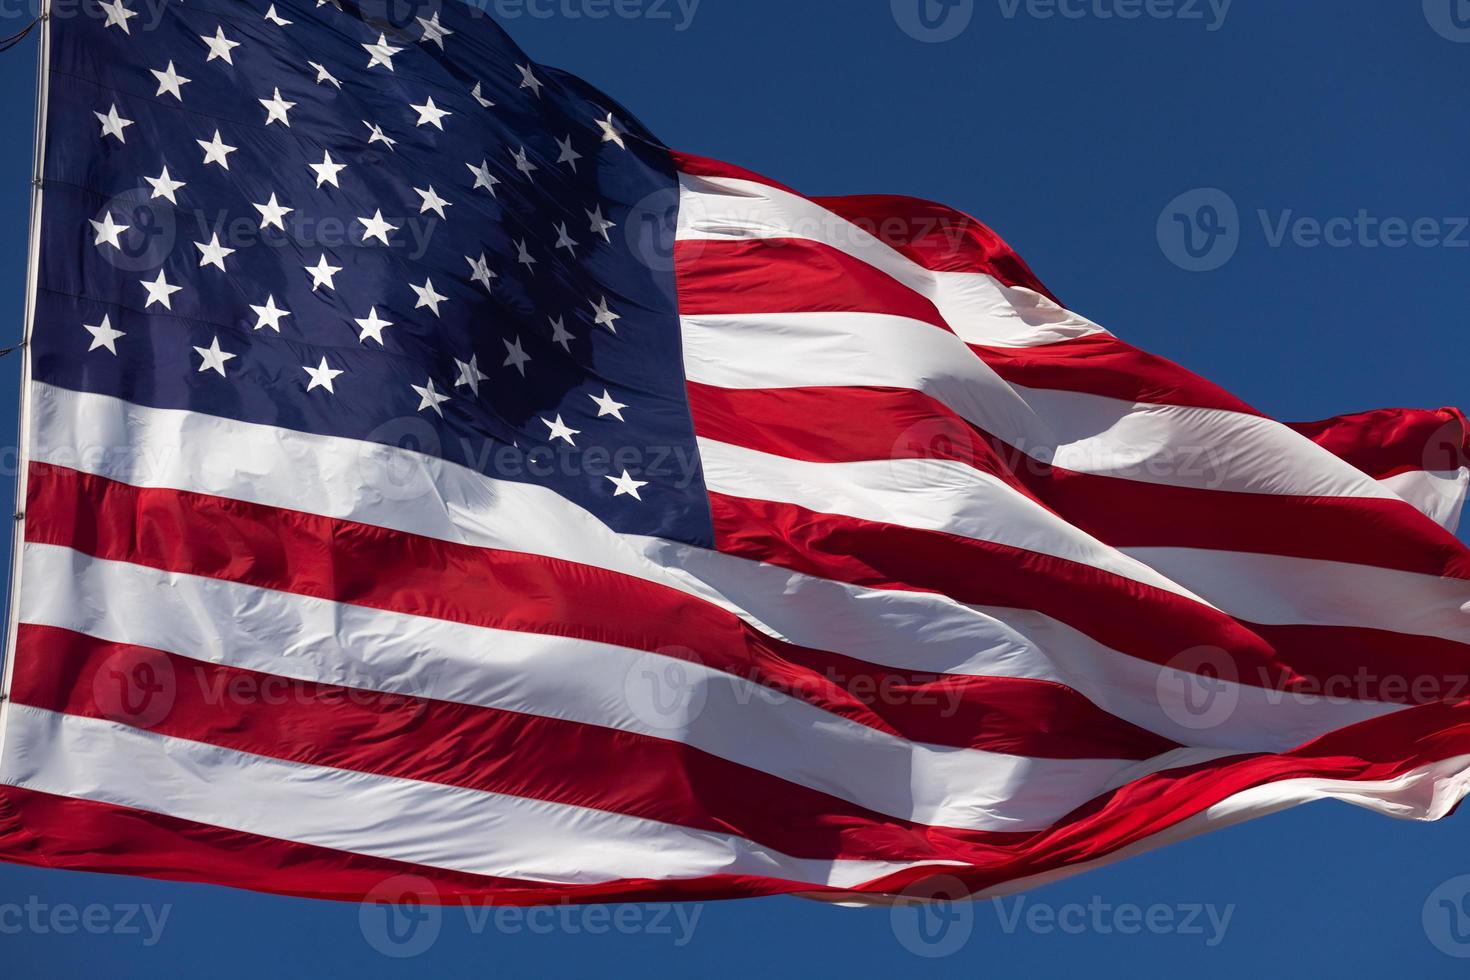 bandeira americana balançando ao vento contra um céu azul profundo foto